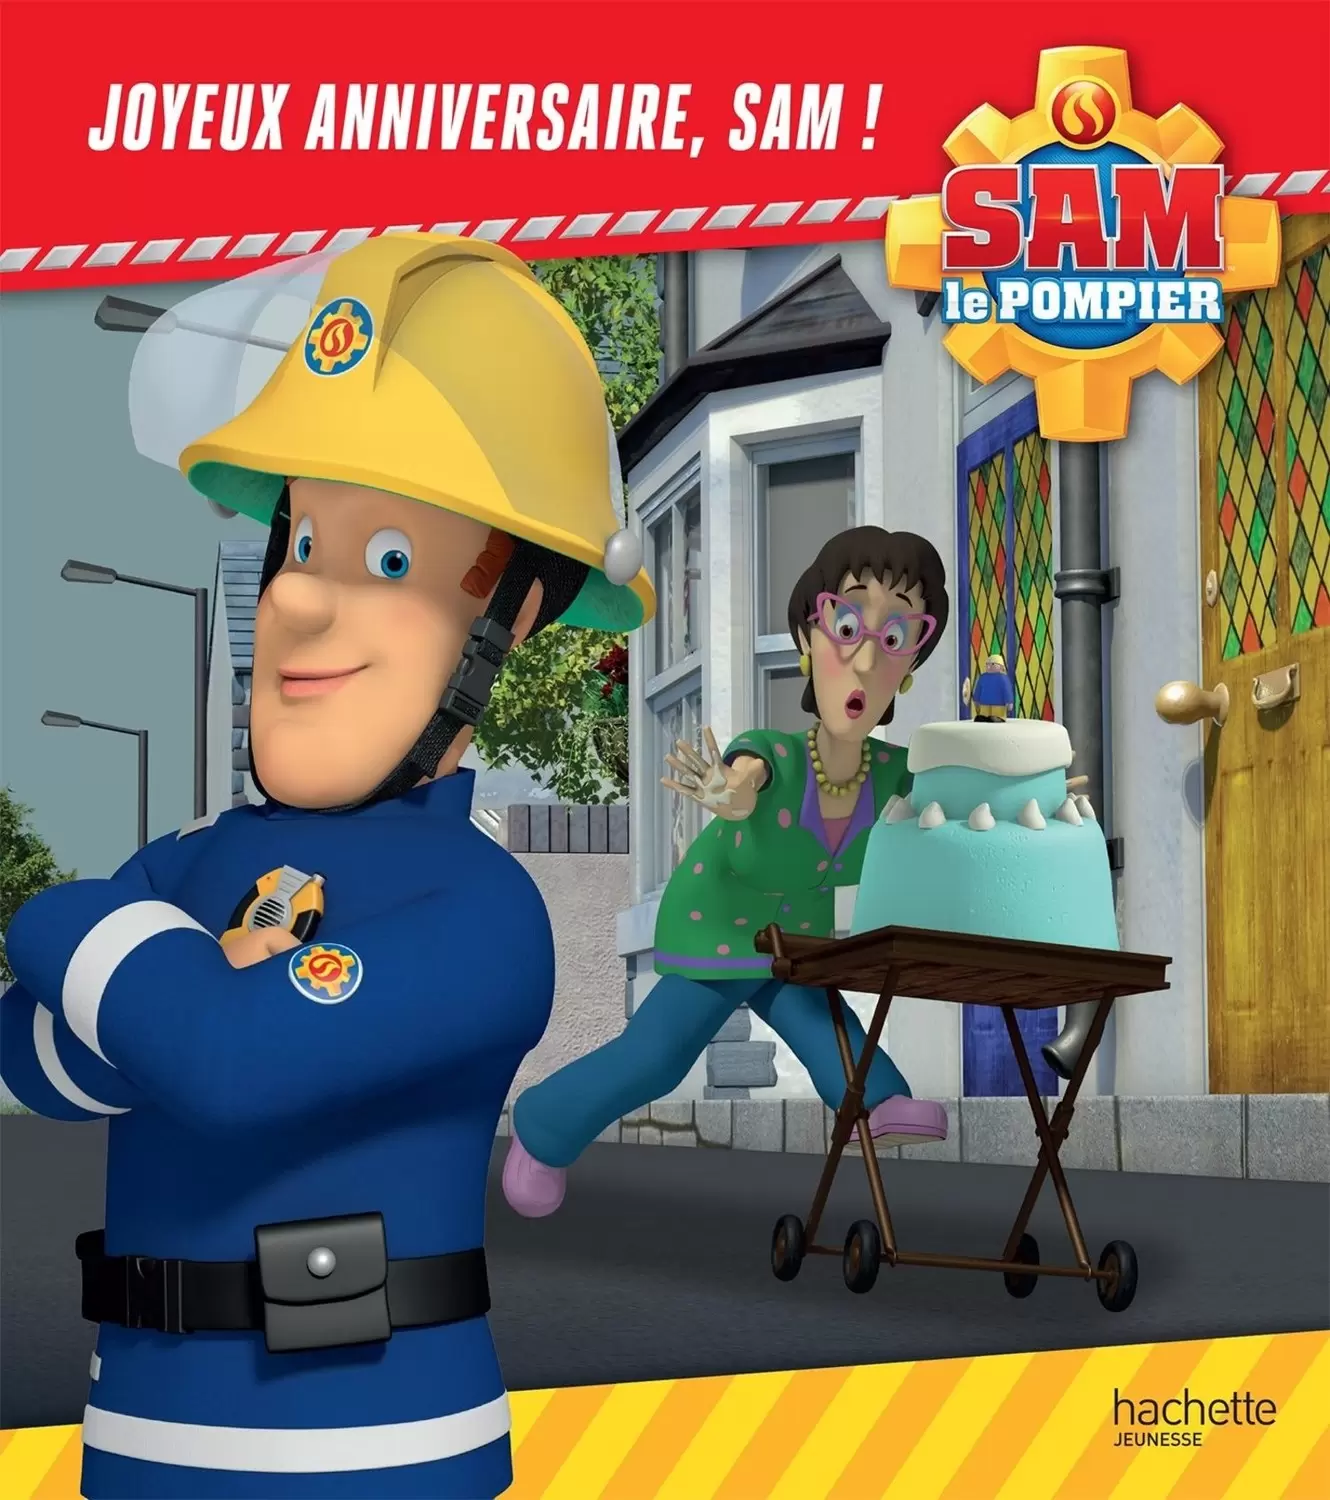 Sam le pompier - Joyeux anniversaire, Sam !